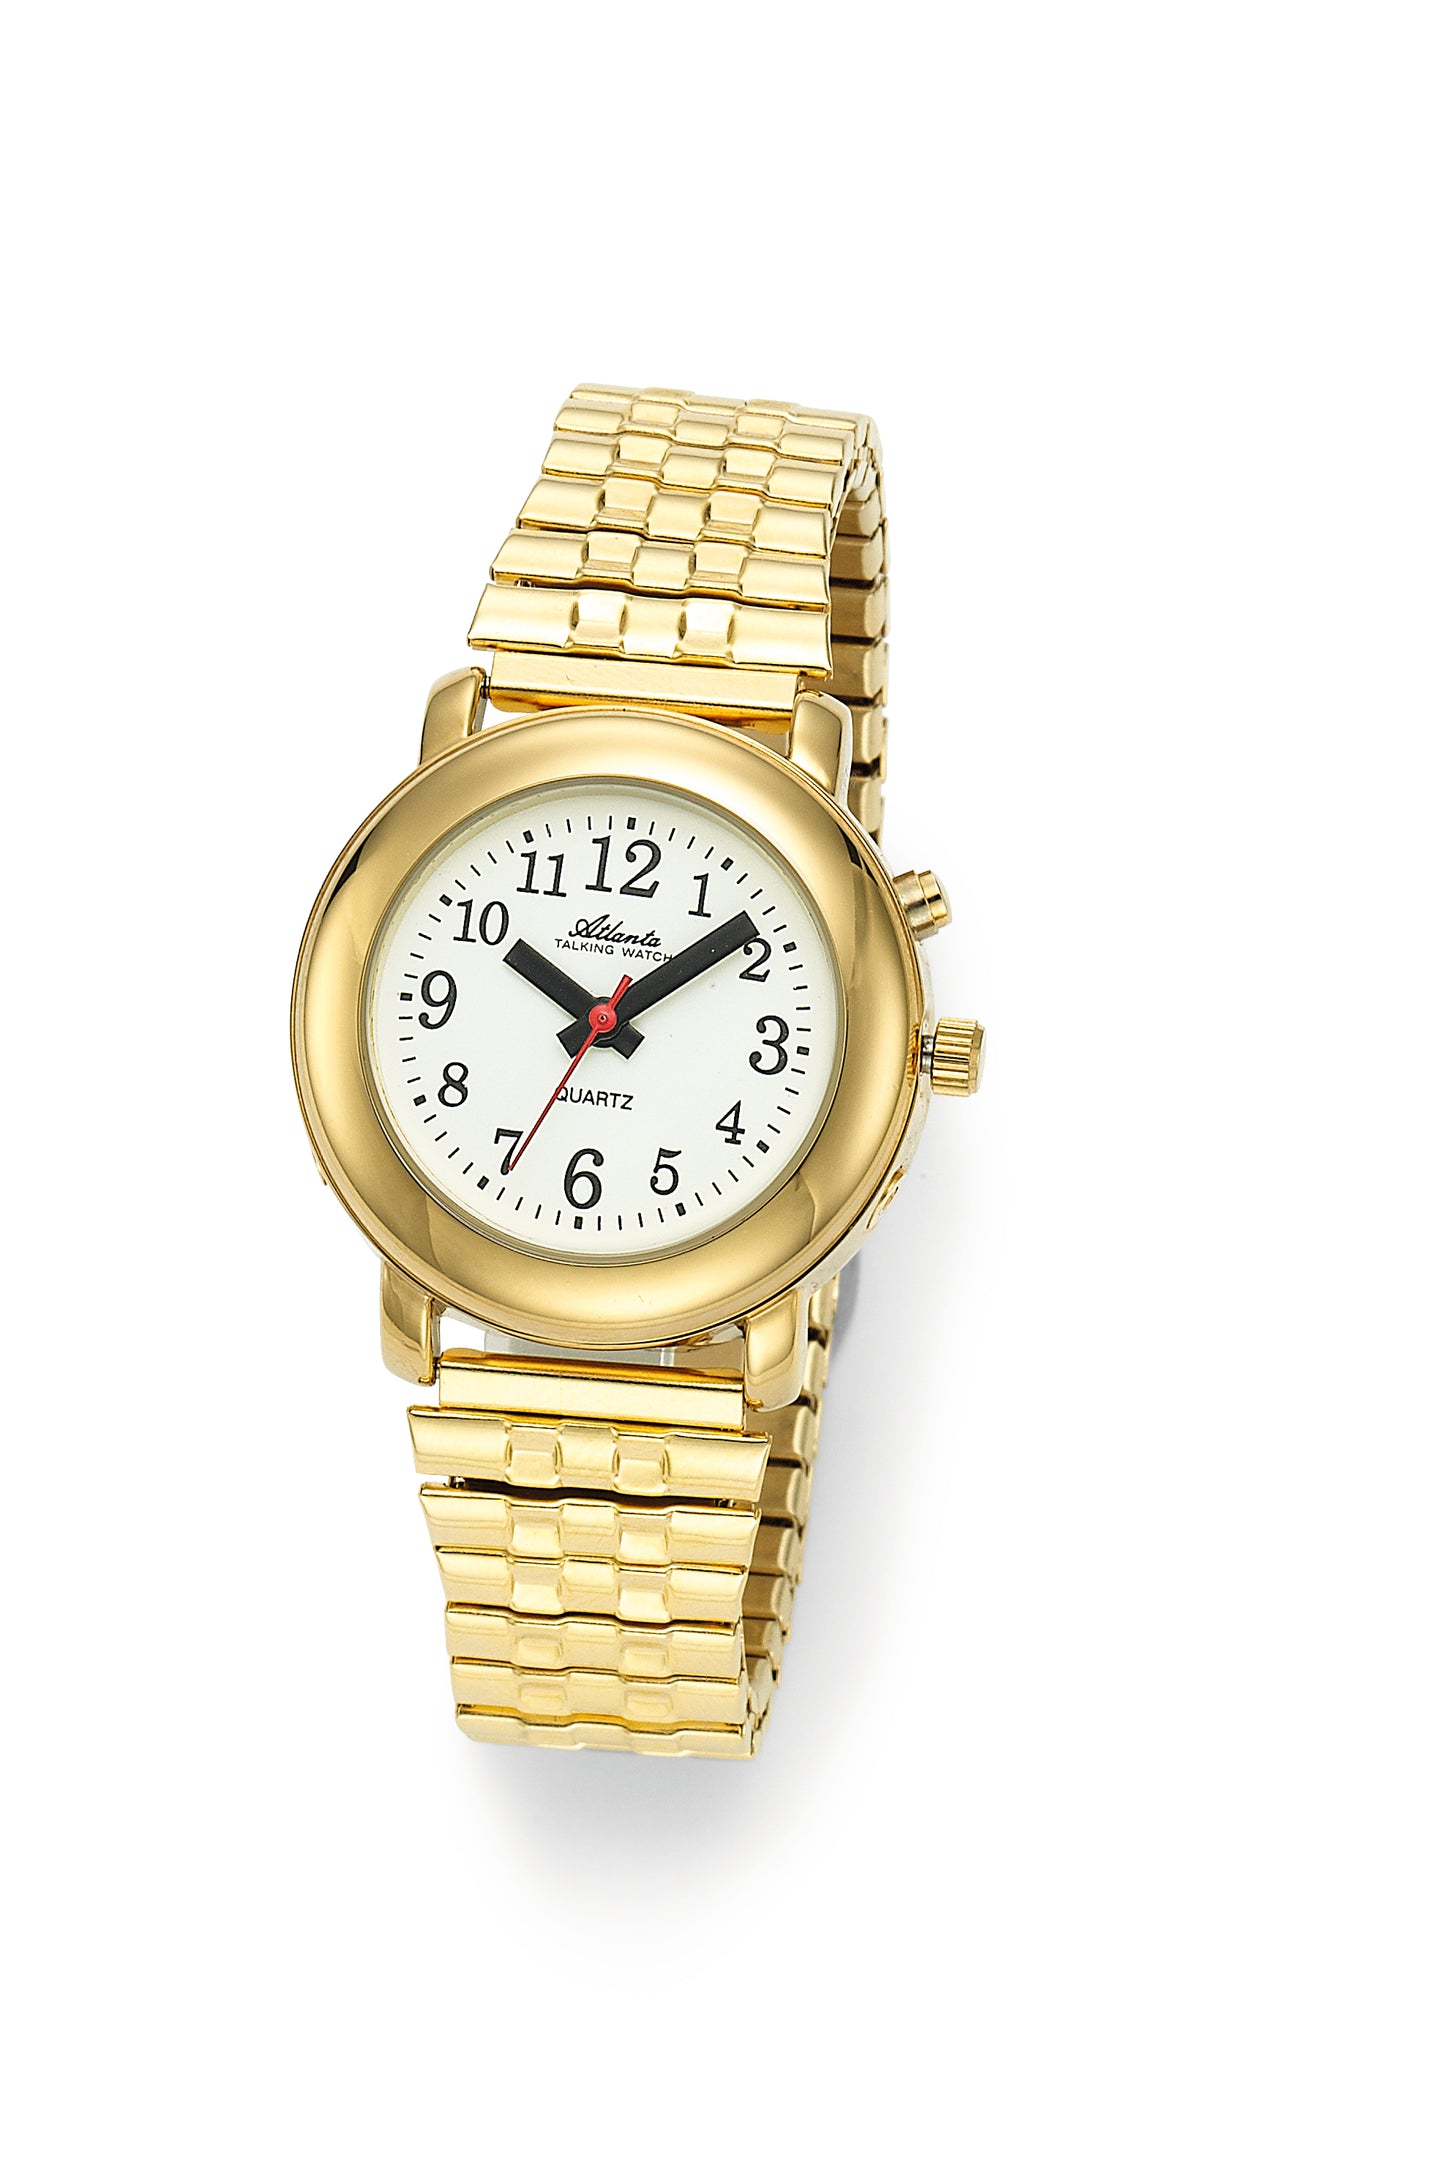 Sprechende Armbanduhr Damenuhr Analog Blindenuhr mit Zeitansage, Flex-Metallband Gold - 8915-9 - R & S Electronic GmbH